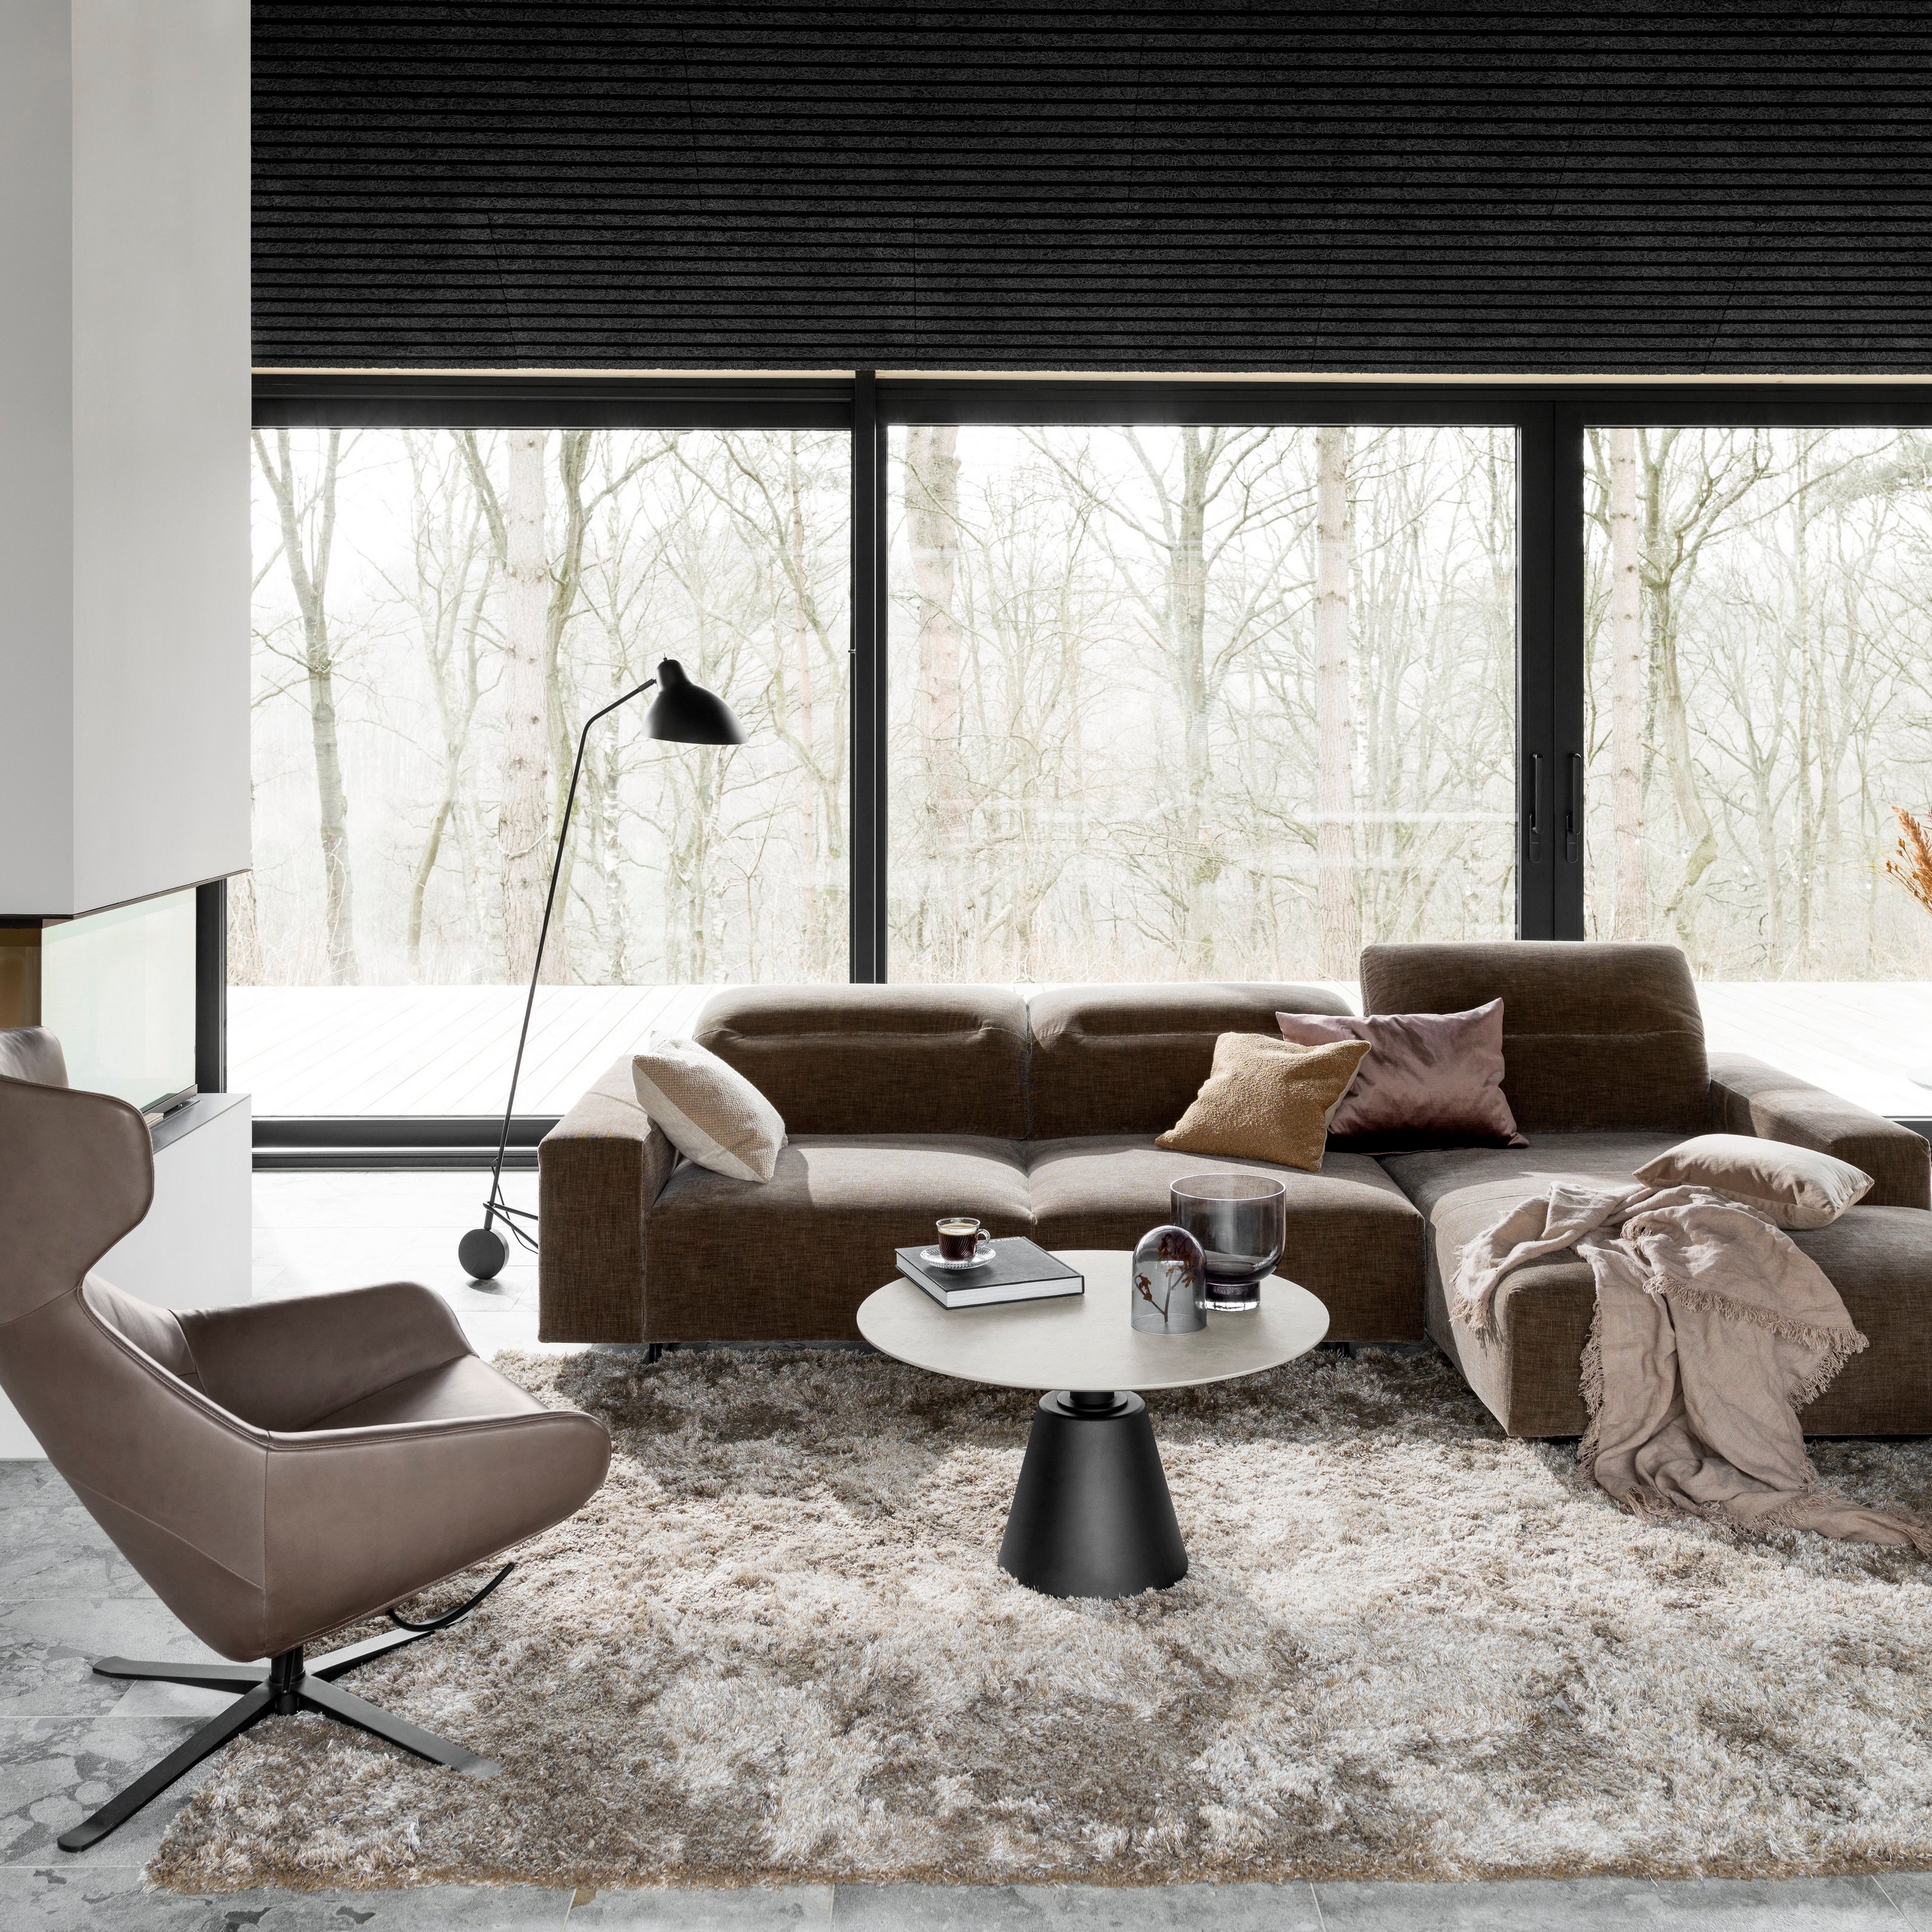 Modern nappali barna szekcionált kanapéval, szürke szőnyeggel és fekete állólámpával az ablak mellett.